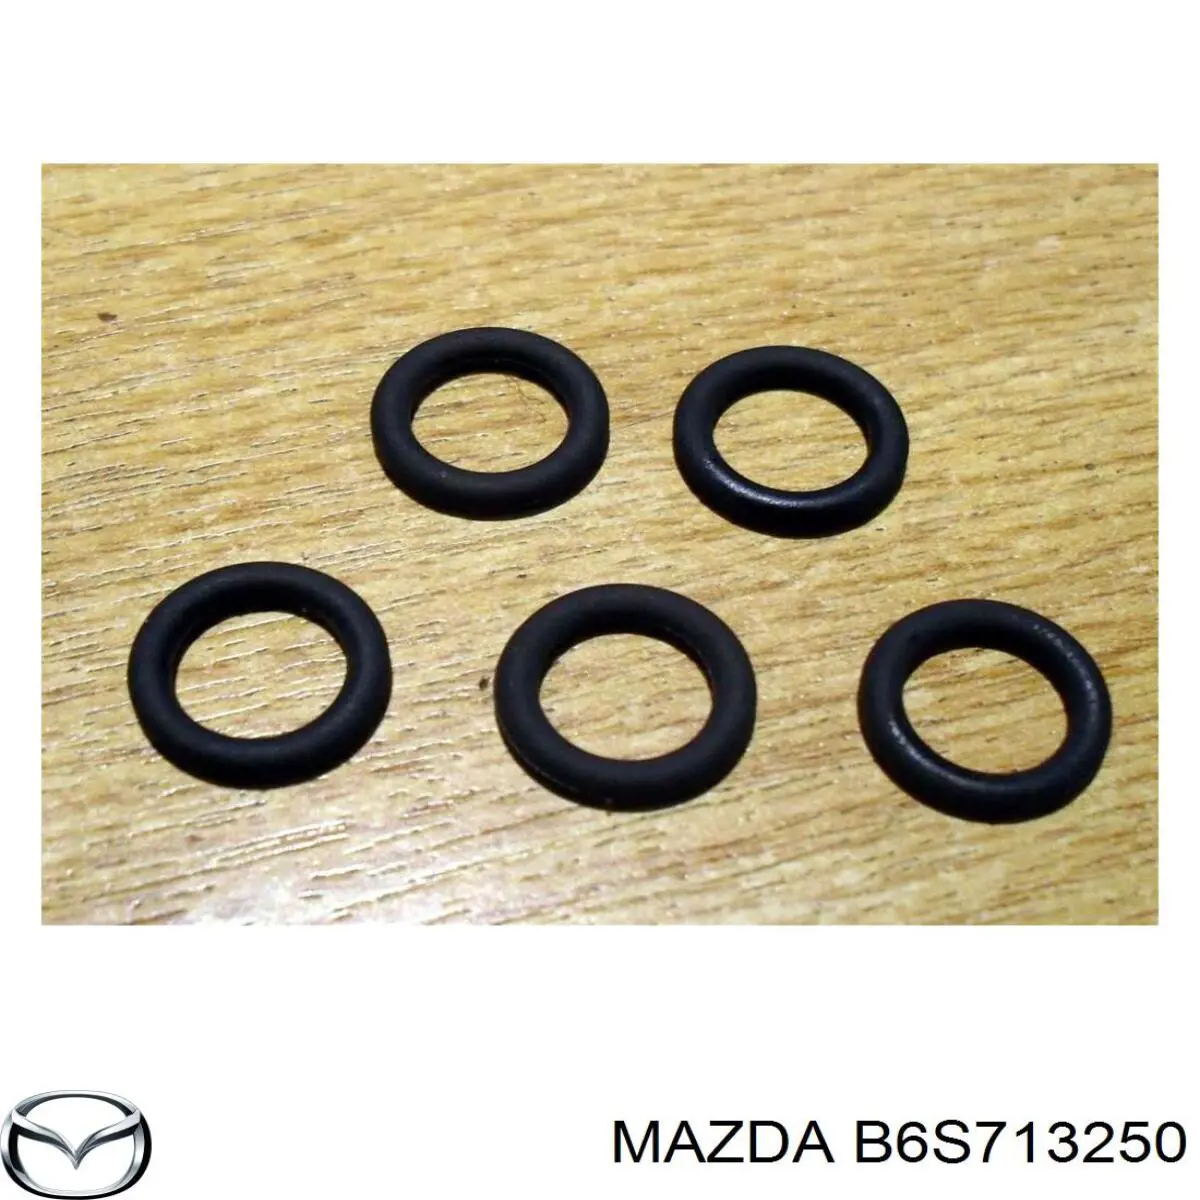 Injetor de injeção de combustível para Mazda Xedos (CA)